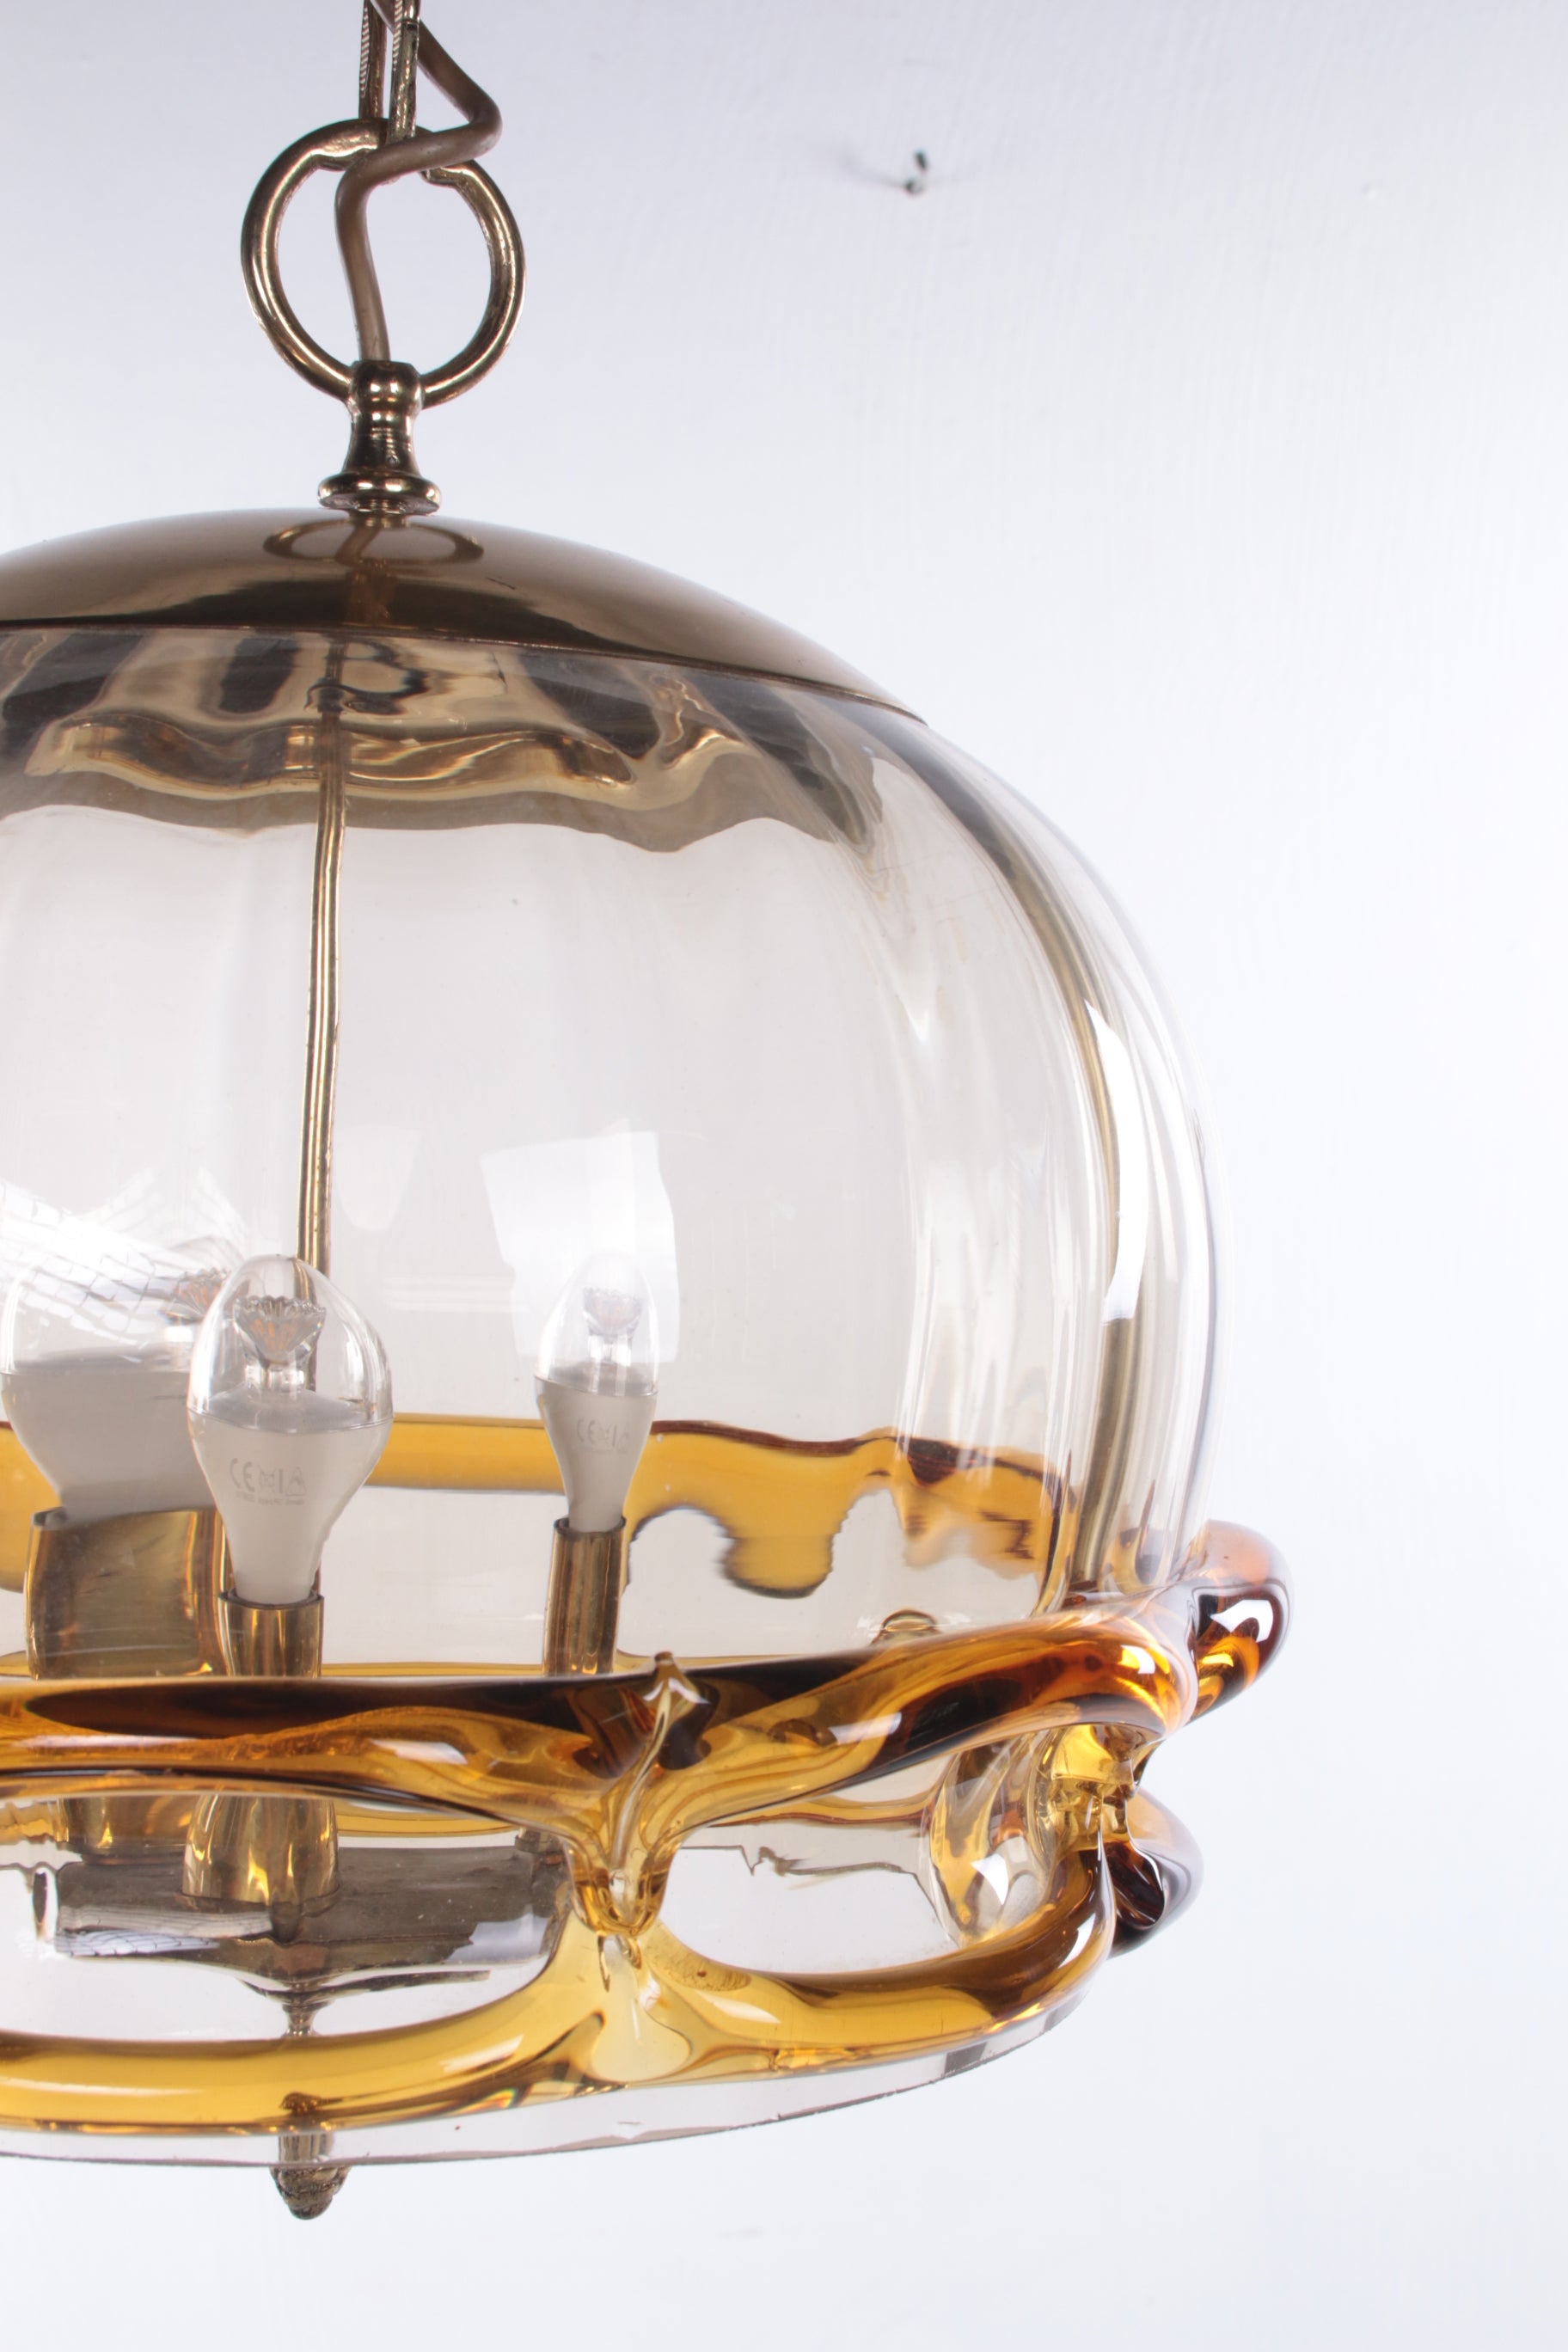 Hollywood Regency Hanglamp met Murano glas,Fischer Leuchten 70s detail foto